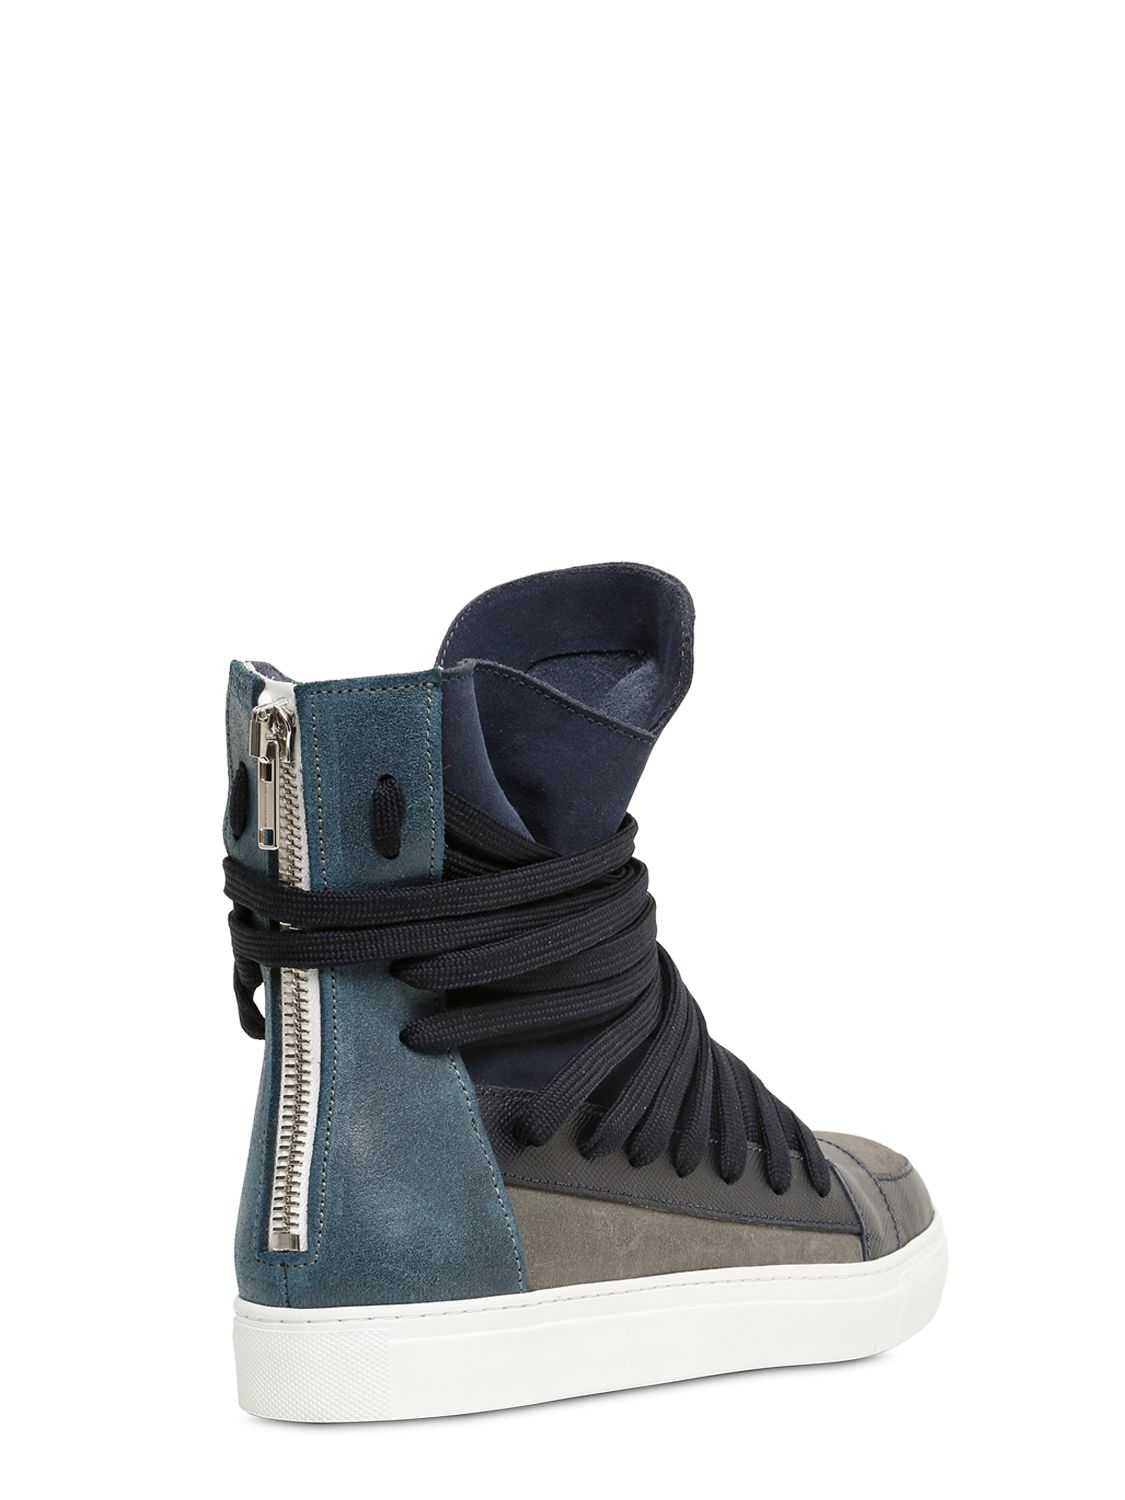 Kris Van Assche Leather & Suede High Top Sneakers in Blue for Men - Lyst